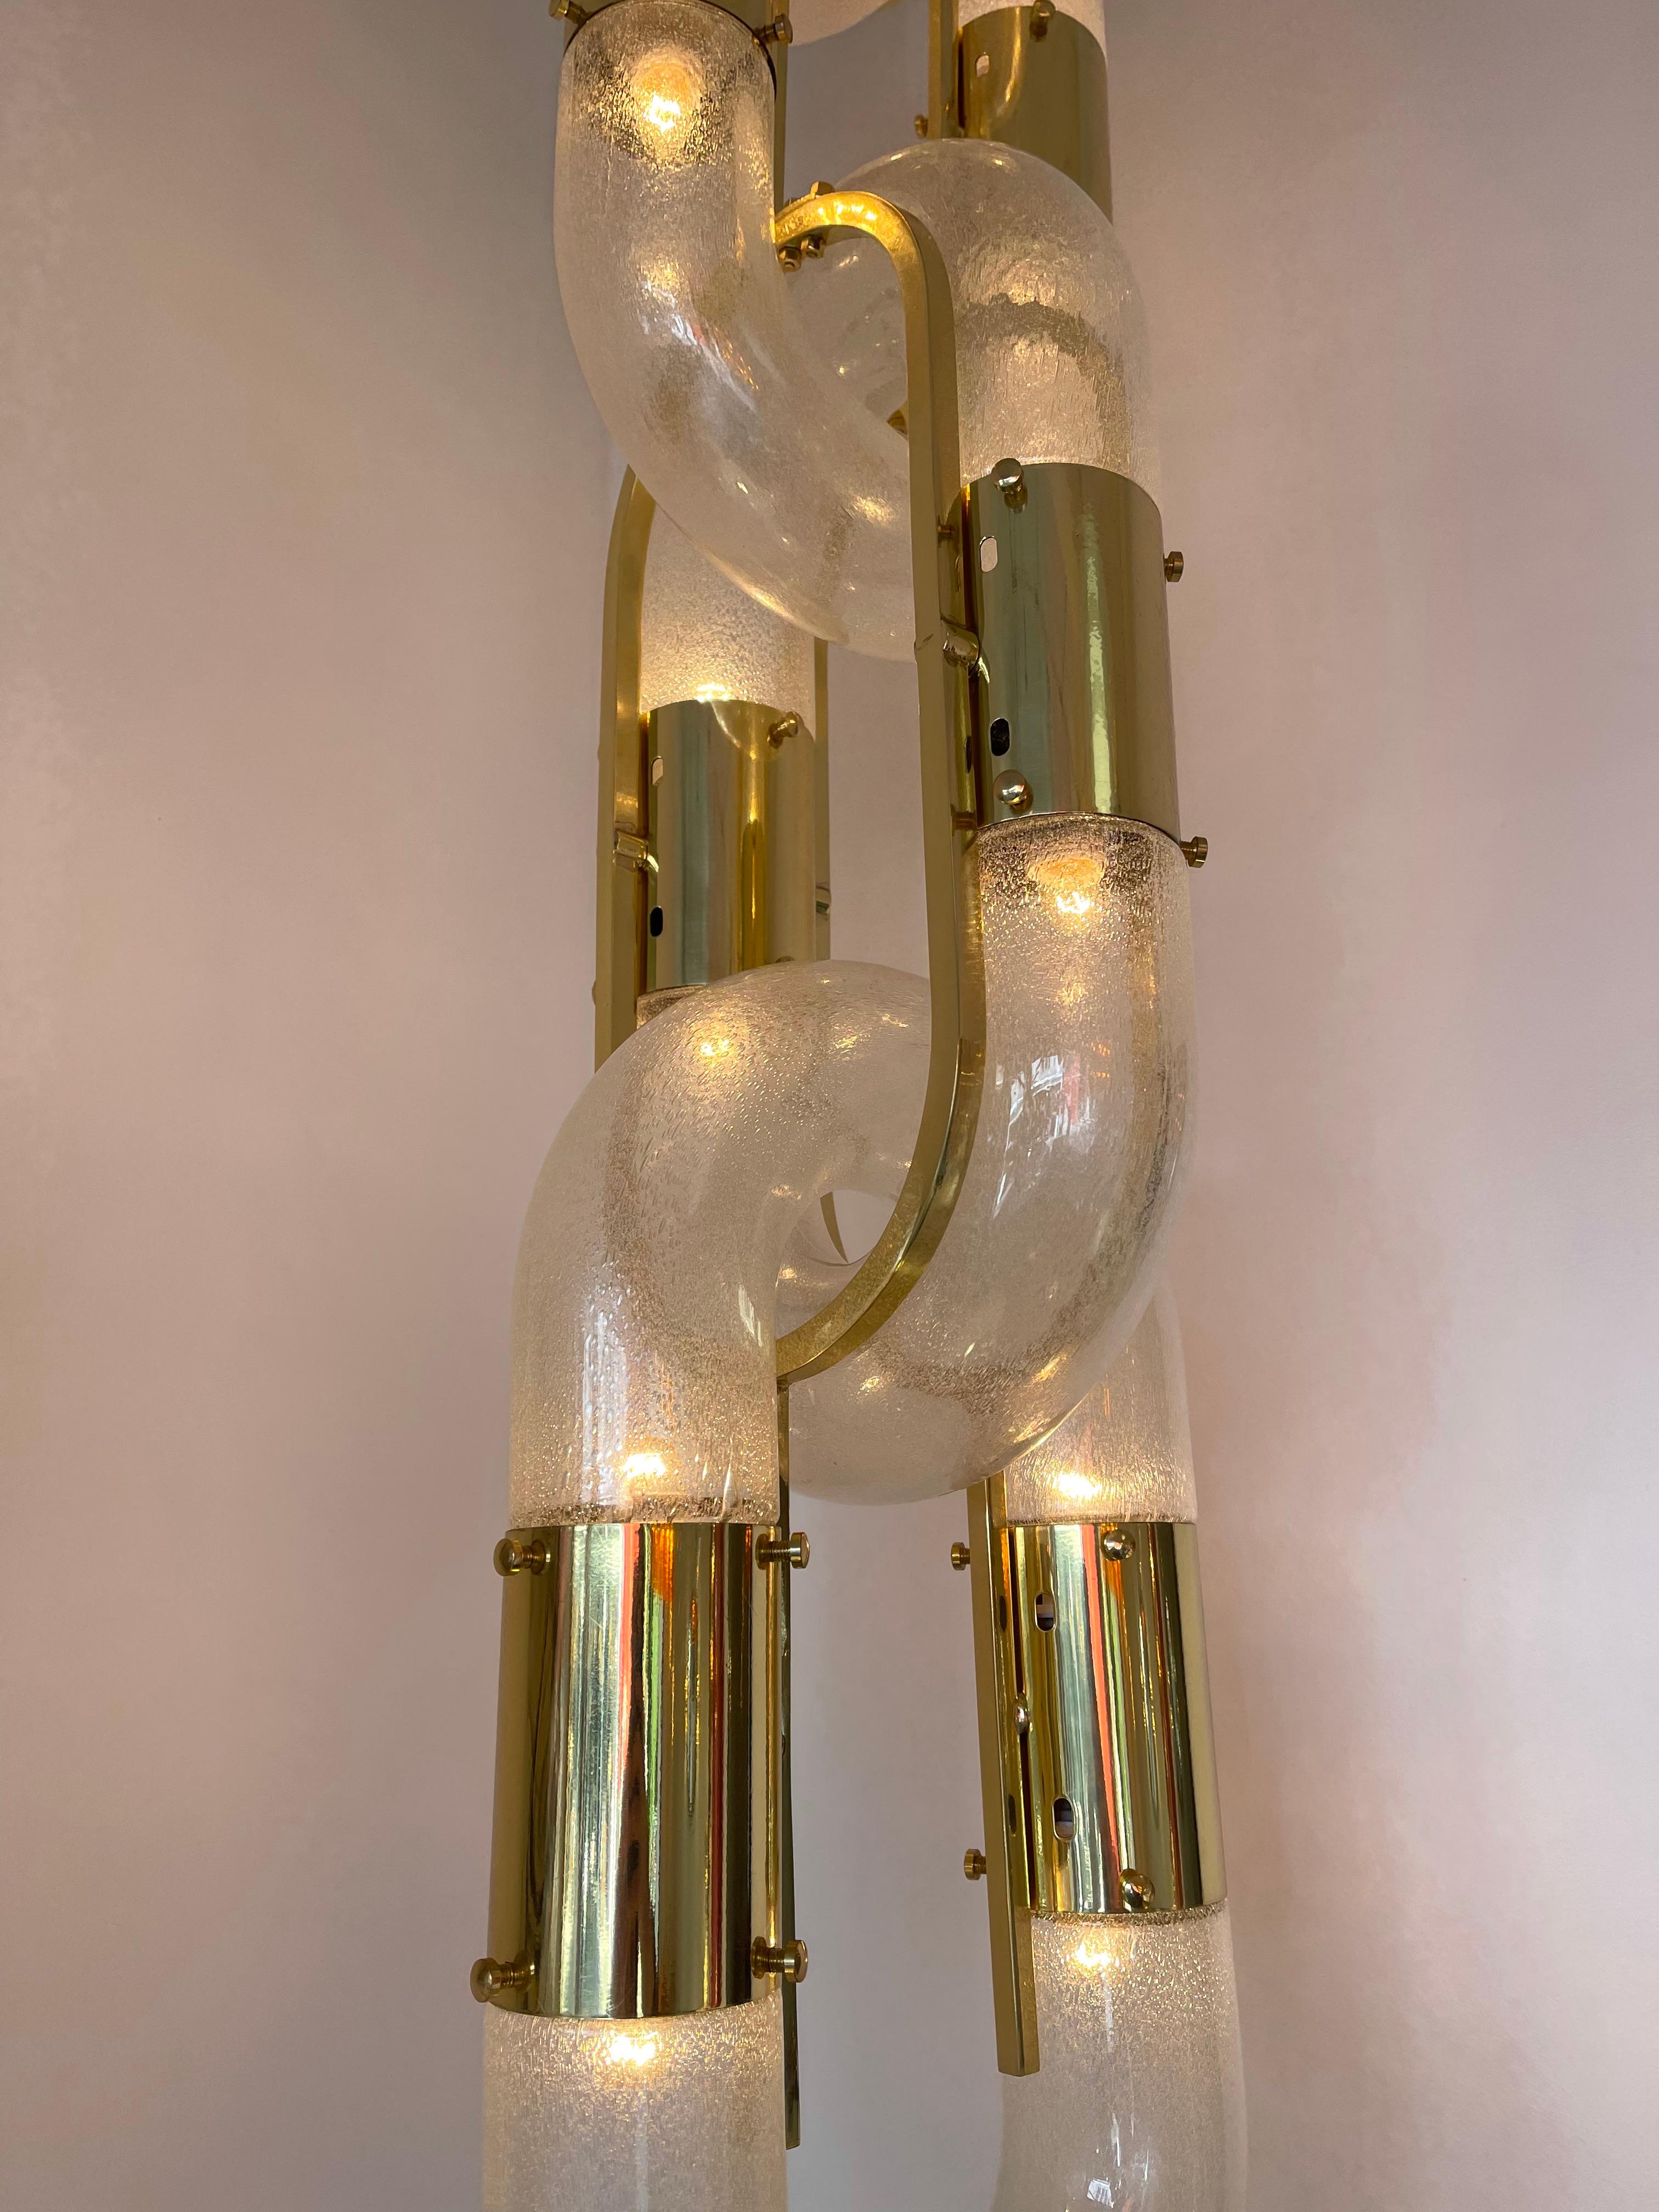 Sehr seltene Mid-Century Modern Space Age vintage original Messing Version von Kronleuchter Decke Pendelleuchte Lampe von Aldo Nason für die Herstellung Mazzega. Geblasenes Murano-Glas. Berühmte Hersteller wie Venini, Vistosi, La Murrina, Seguso,